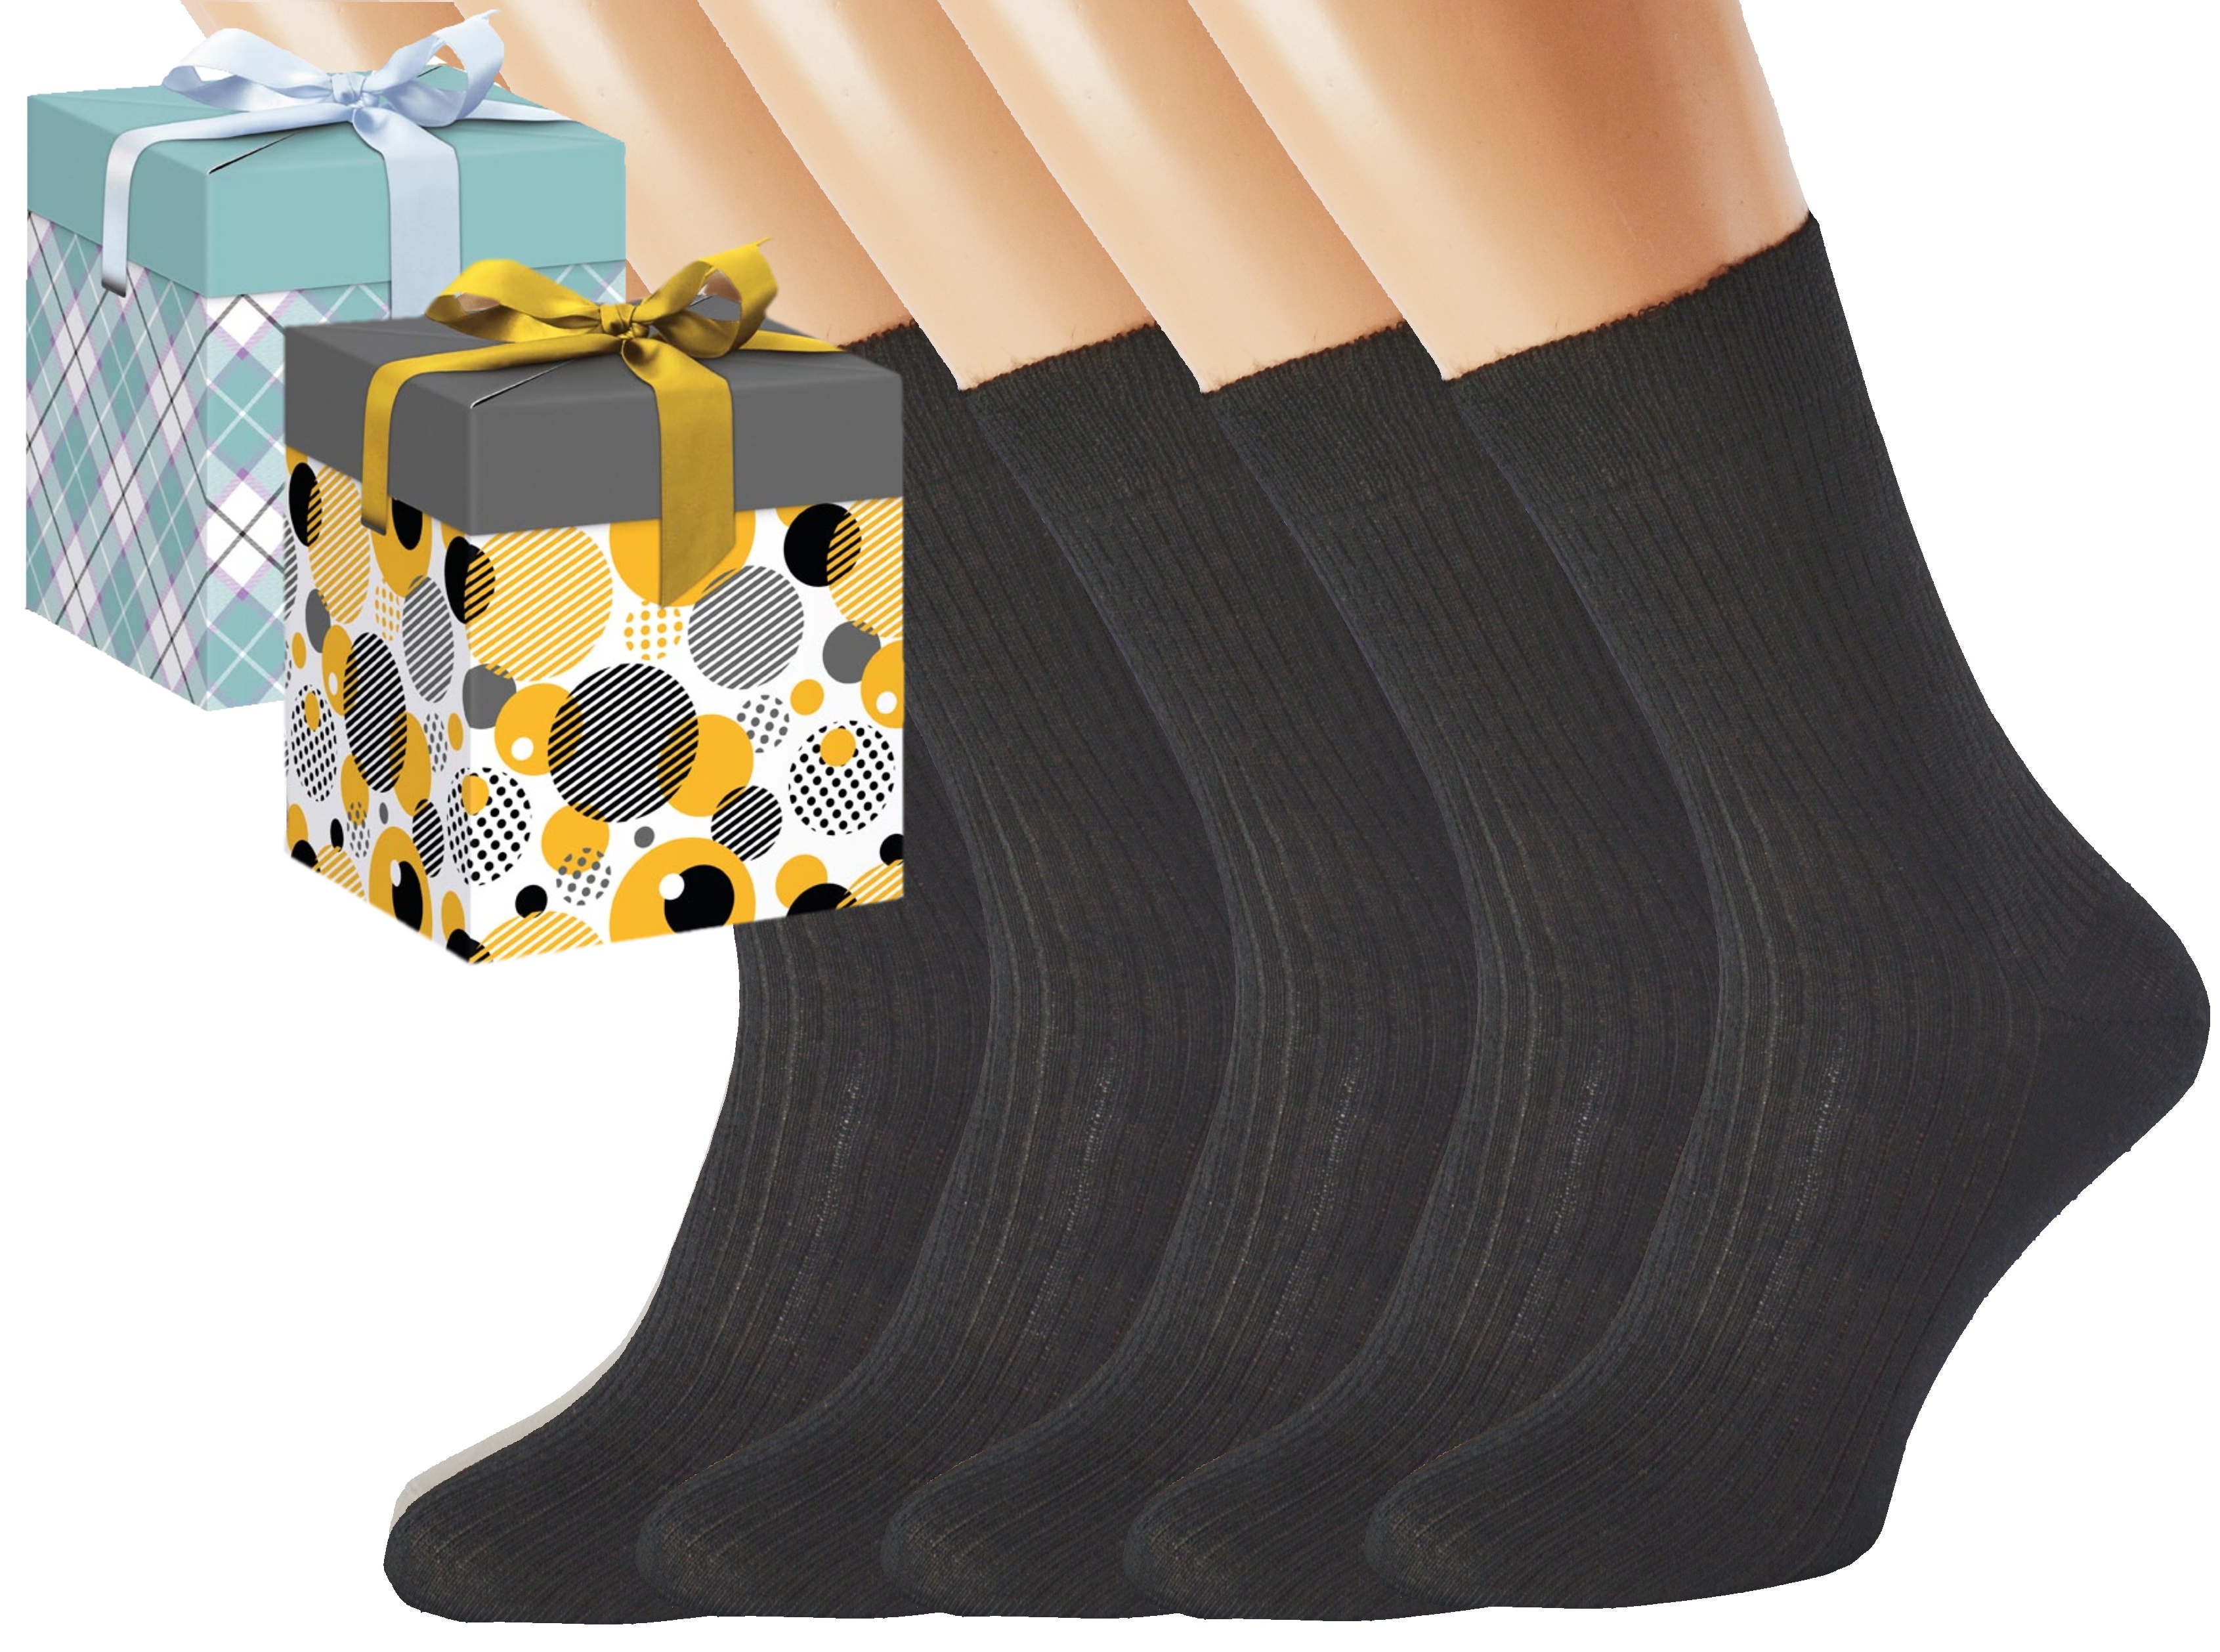 Dárkové balení merino zdravotních ponožek LUKÁŠ KUKS Barva: Černé, Velikost: EUR 36-38 (UK 4-5), Zvolte variantu dárkového balení: Modrá s oky